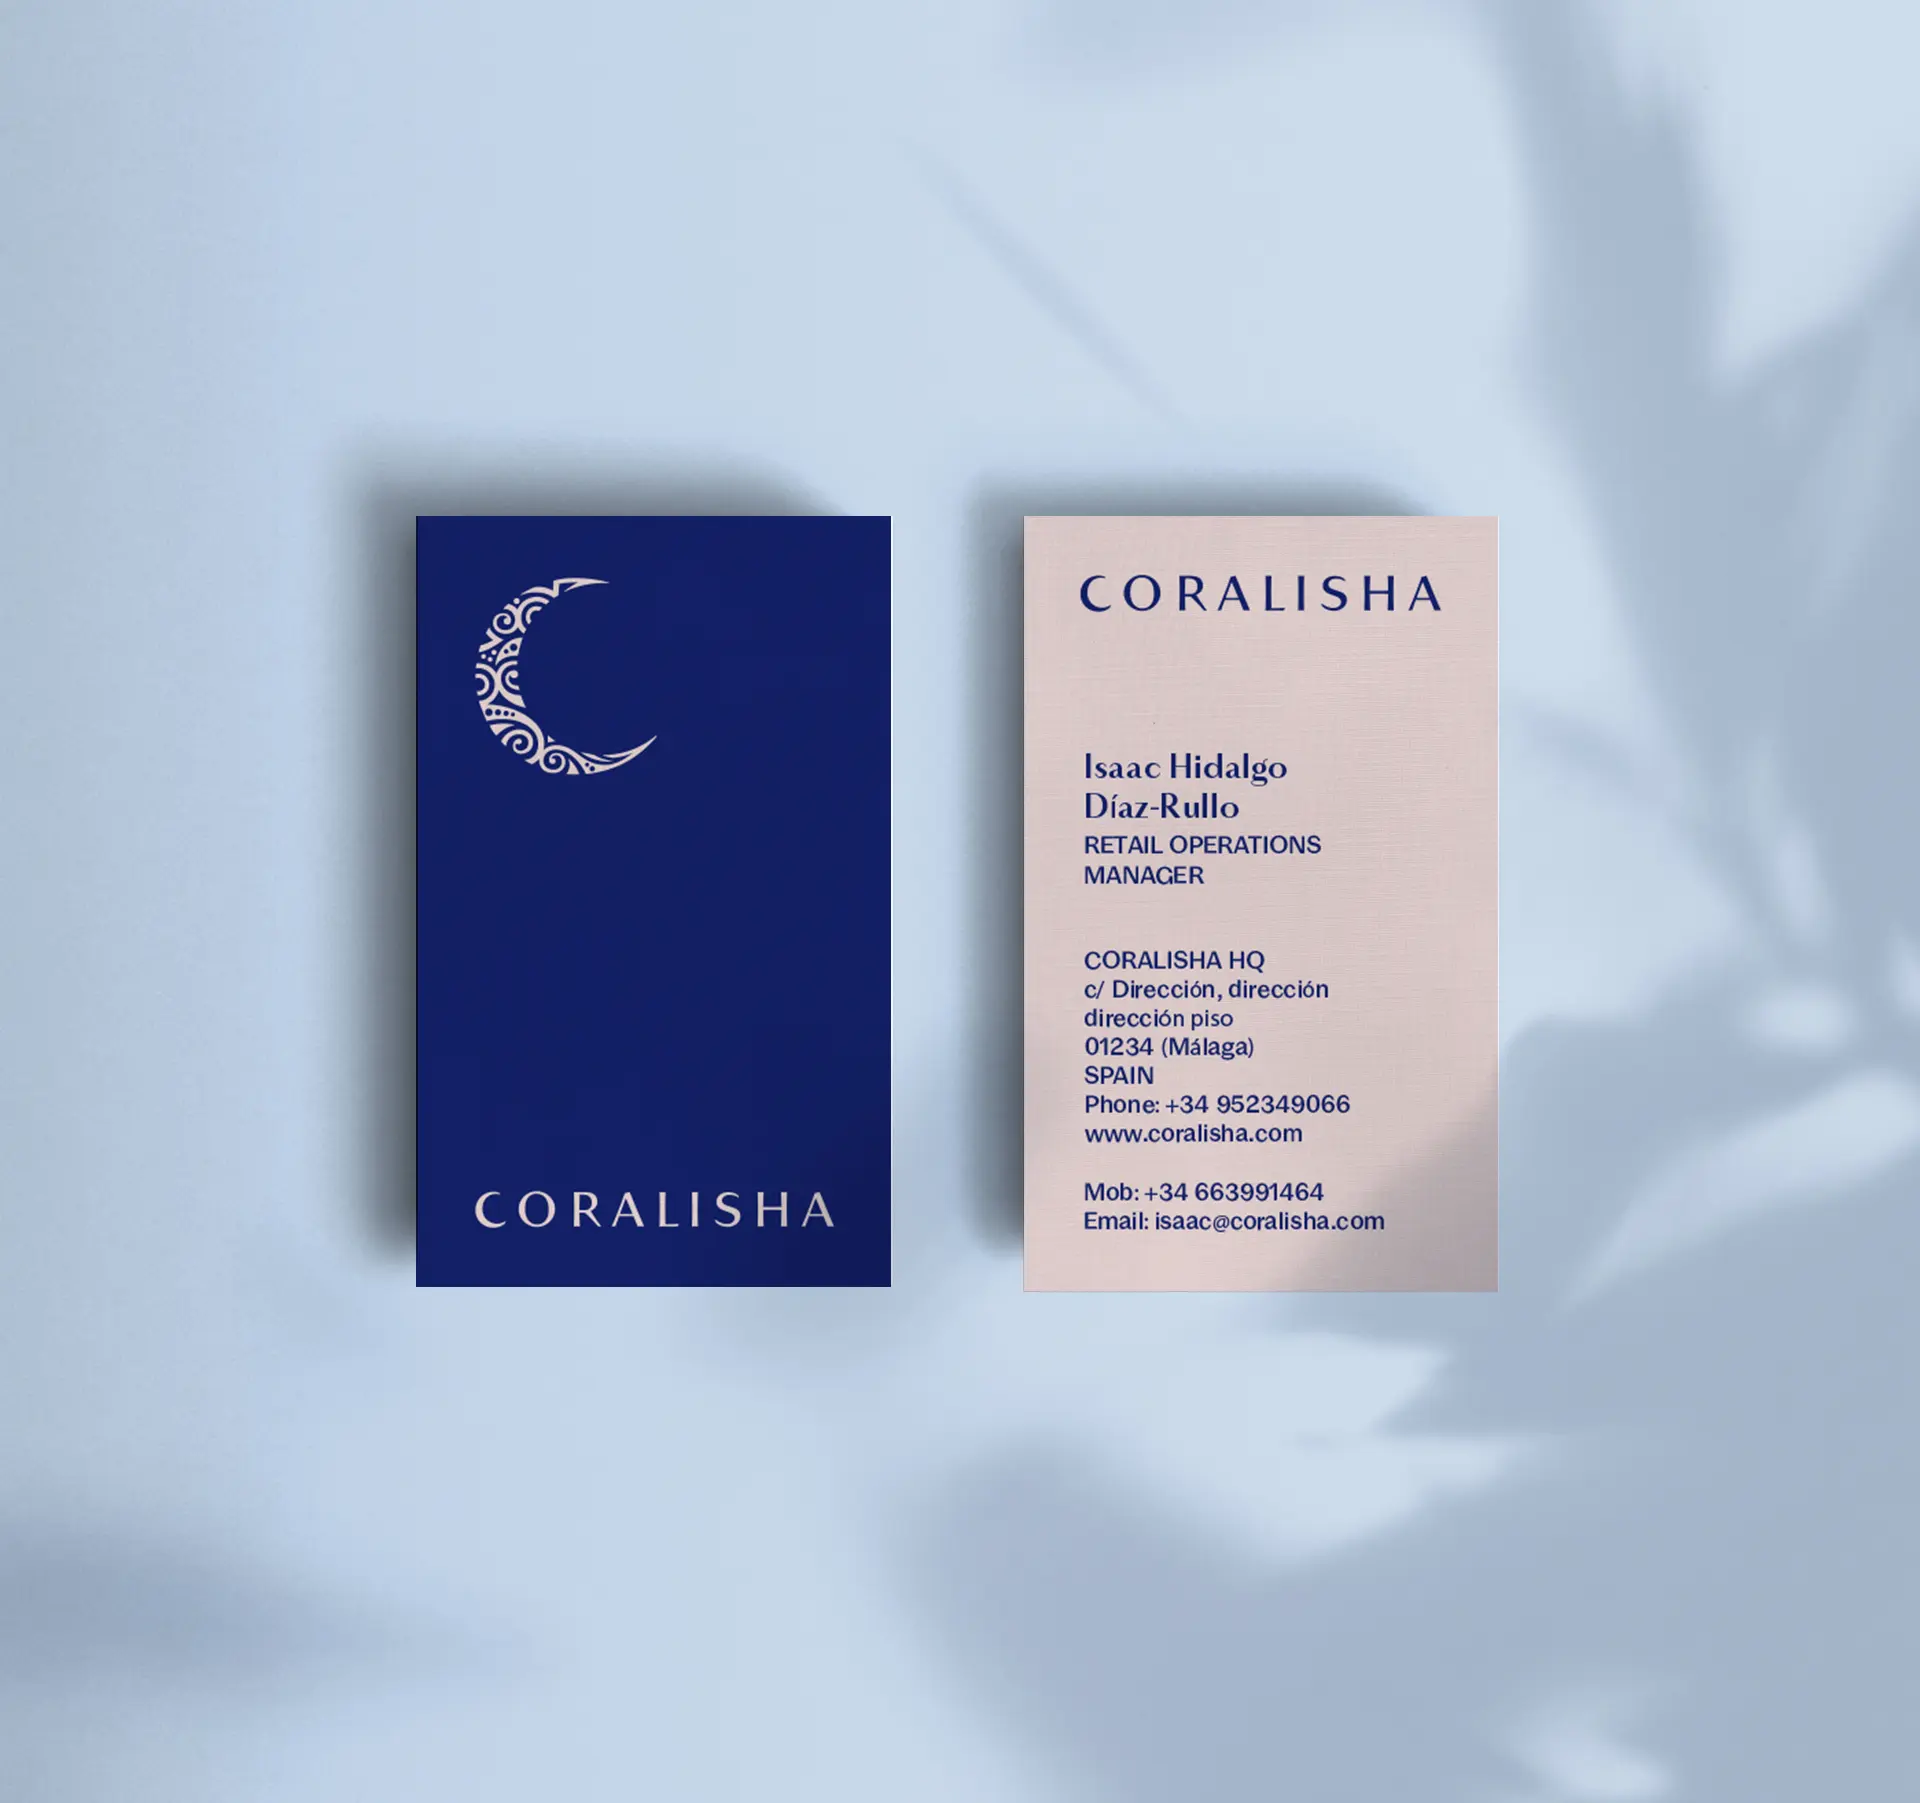 Tarjeta corporativas en azul y beige de la marca Coralisha sobre fondo azul